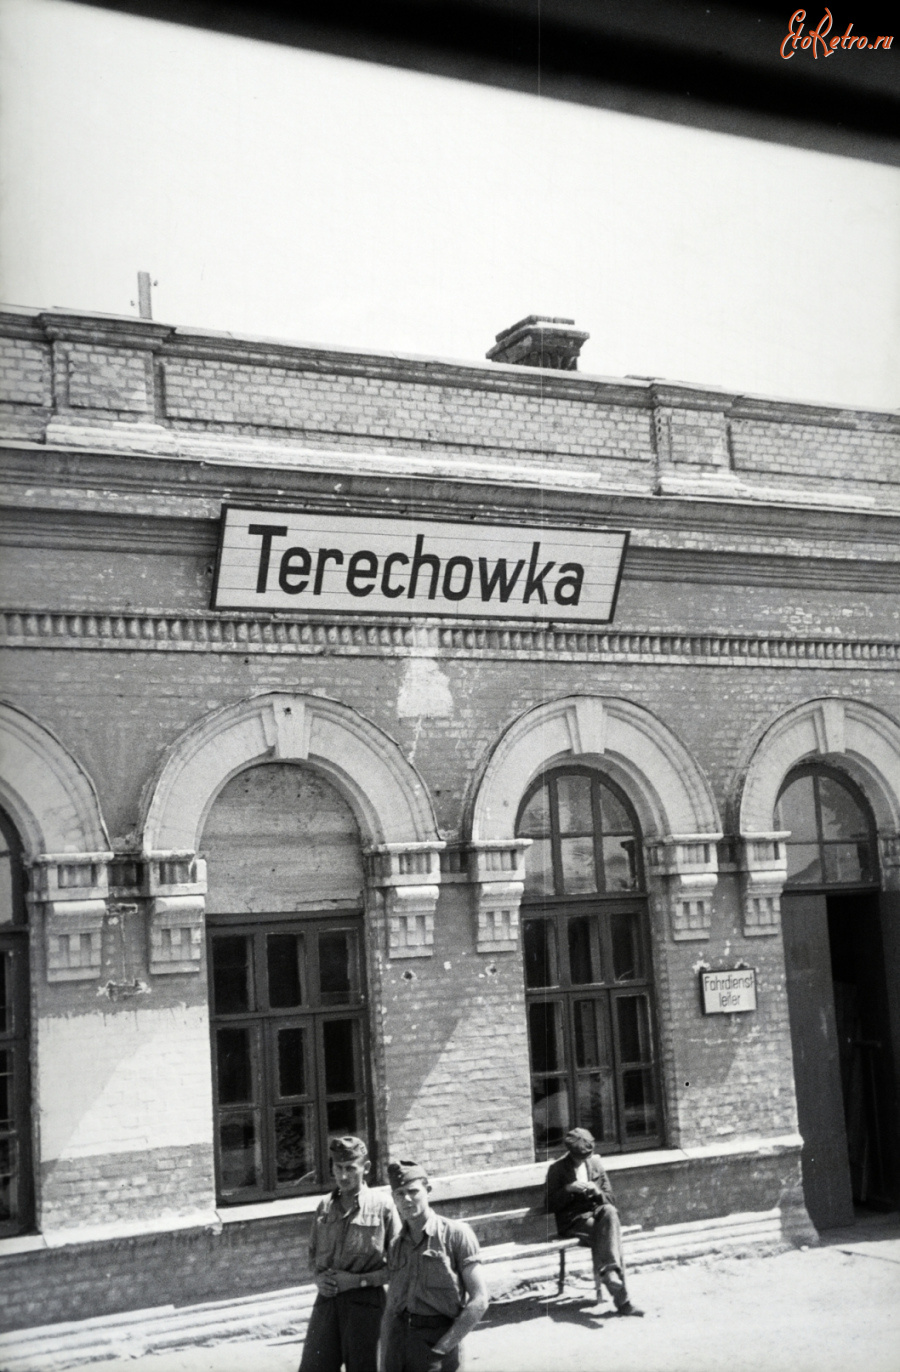 Тереховка - Железнодорожный вокзал станции Тереховка во время немецкой оккупации 1941-1944 гг в Великой Отечественной войне